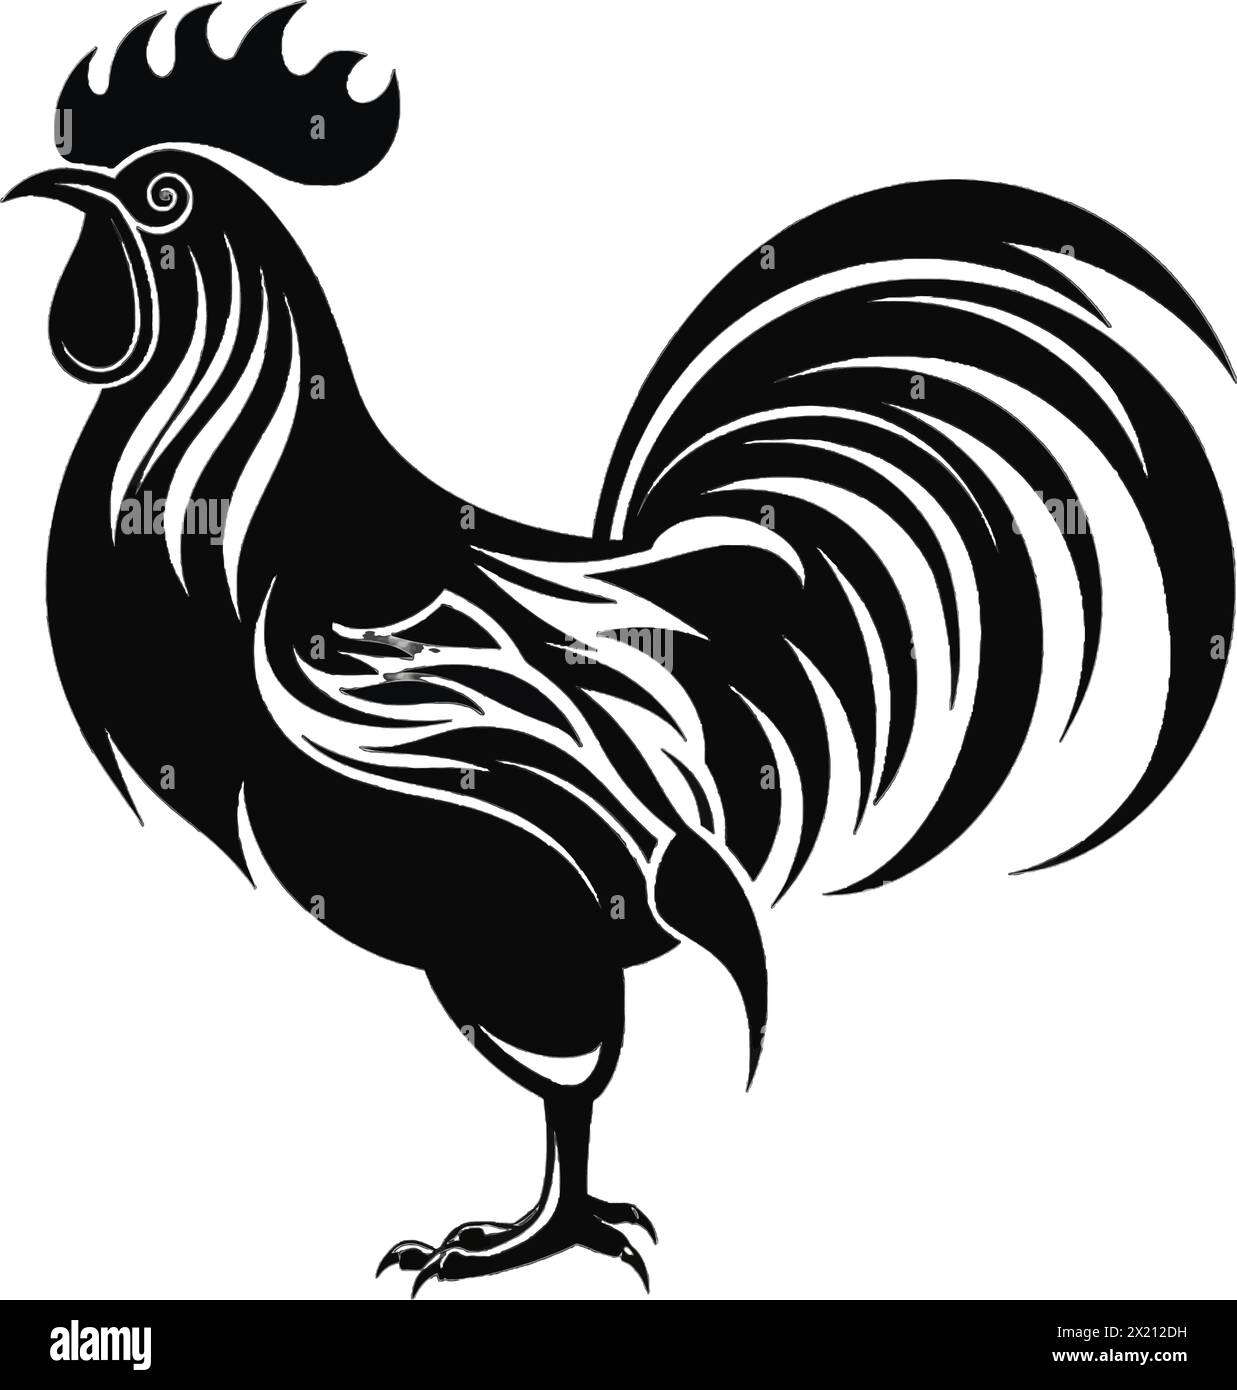 Illustration vectorielle d'une poule, coq en silhouette noire sur un fond blanc propre, capturant les formes gracieuses de ce vecteur. Illustration de Vecteur